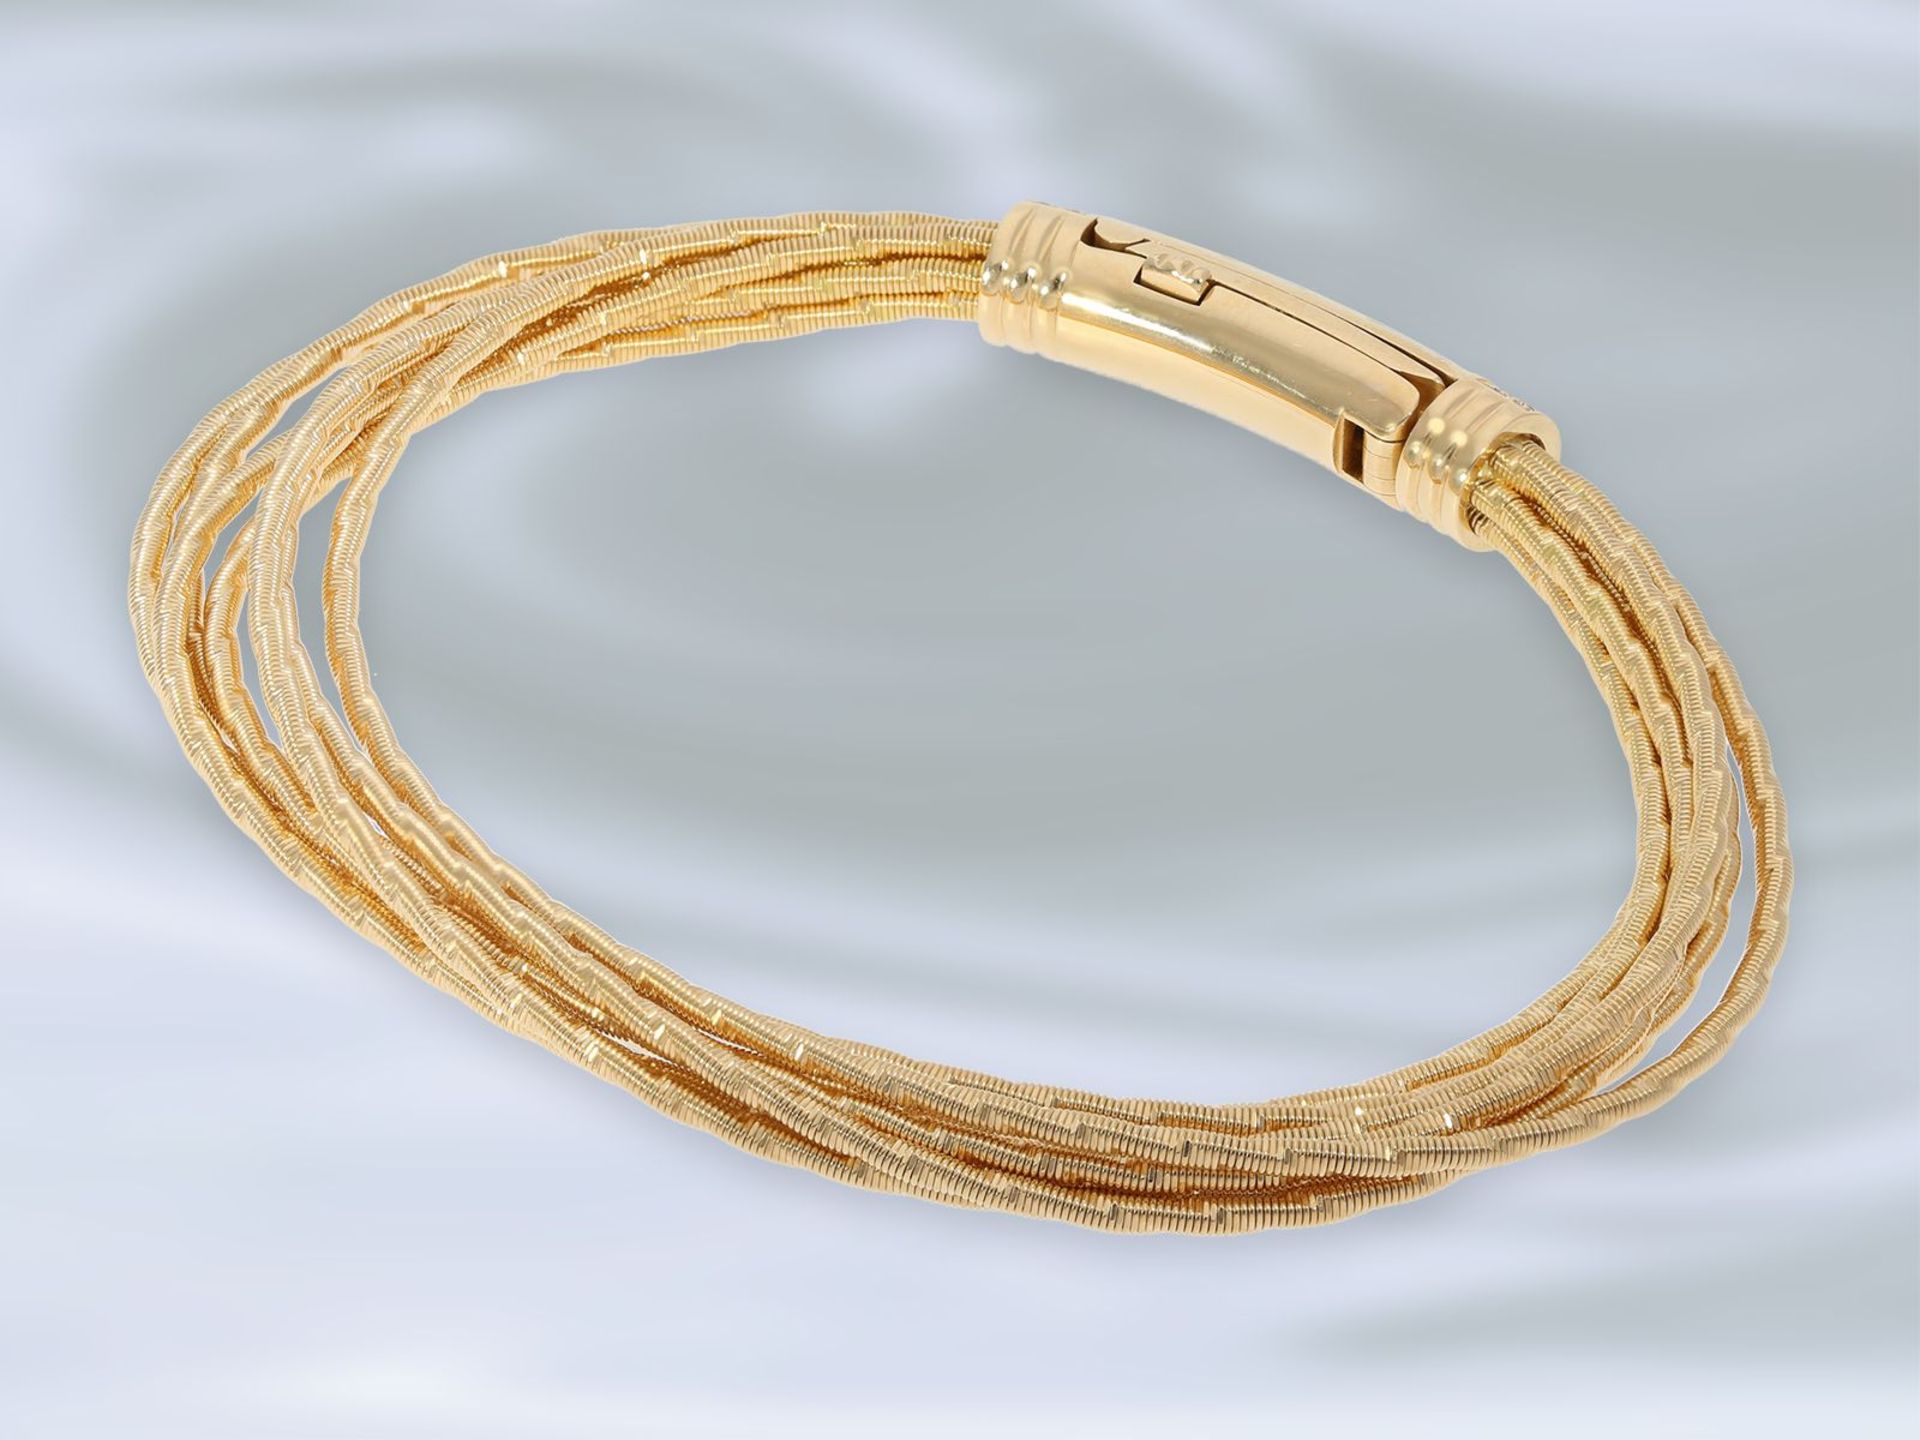 Armband: exquisites, neuwertiges Gold/Emaille-Armband von Wellendorff "Flügel der Nacht", - Bild 3 aus 4